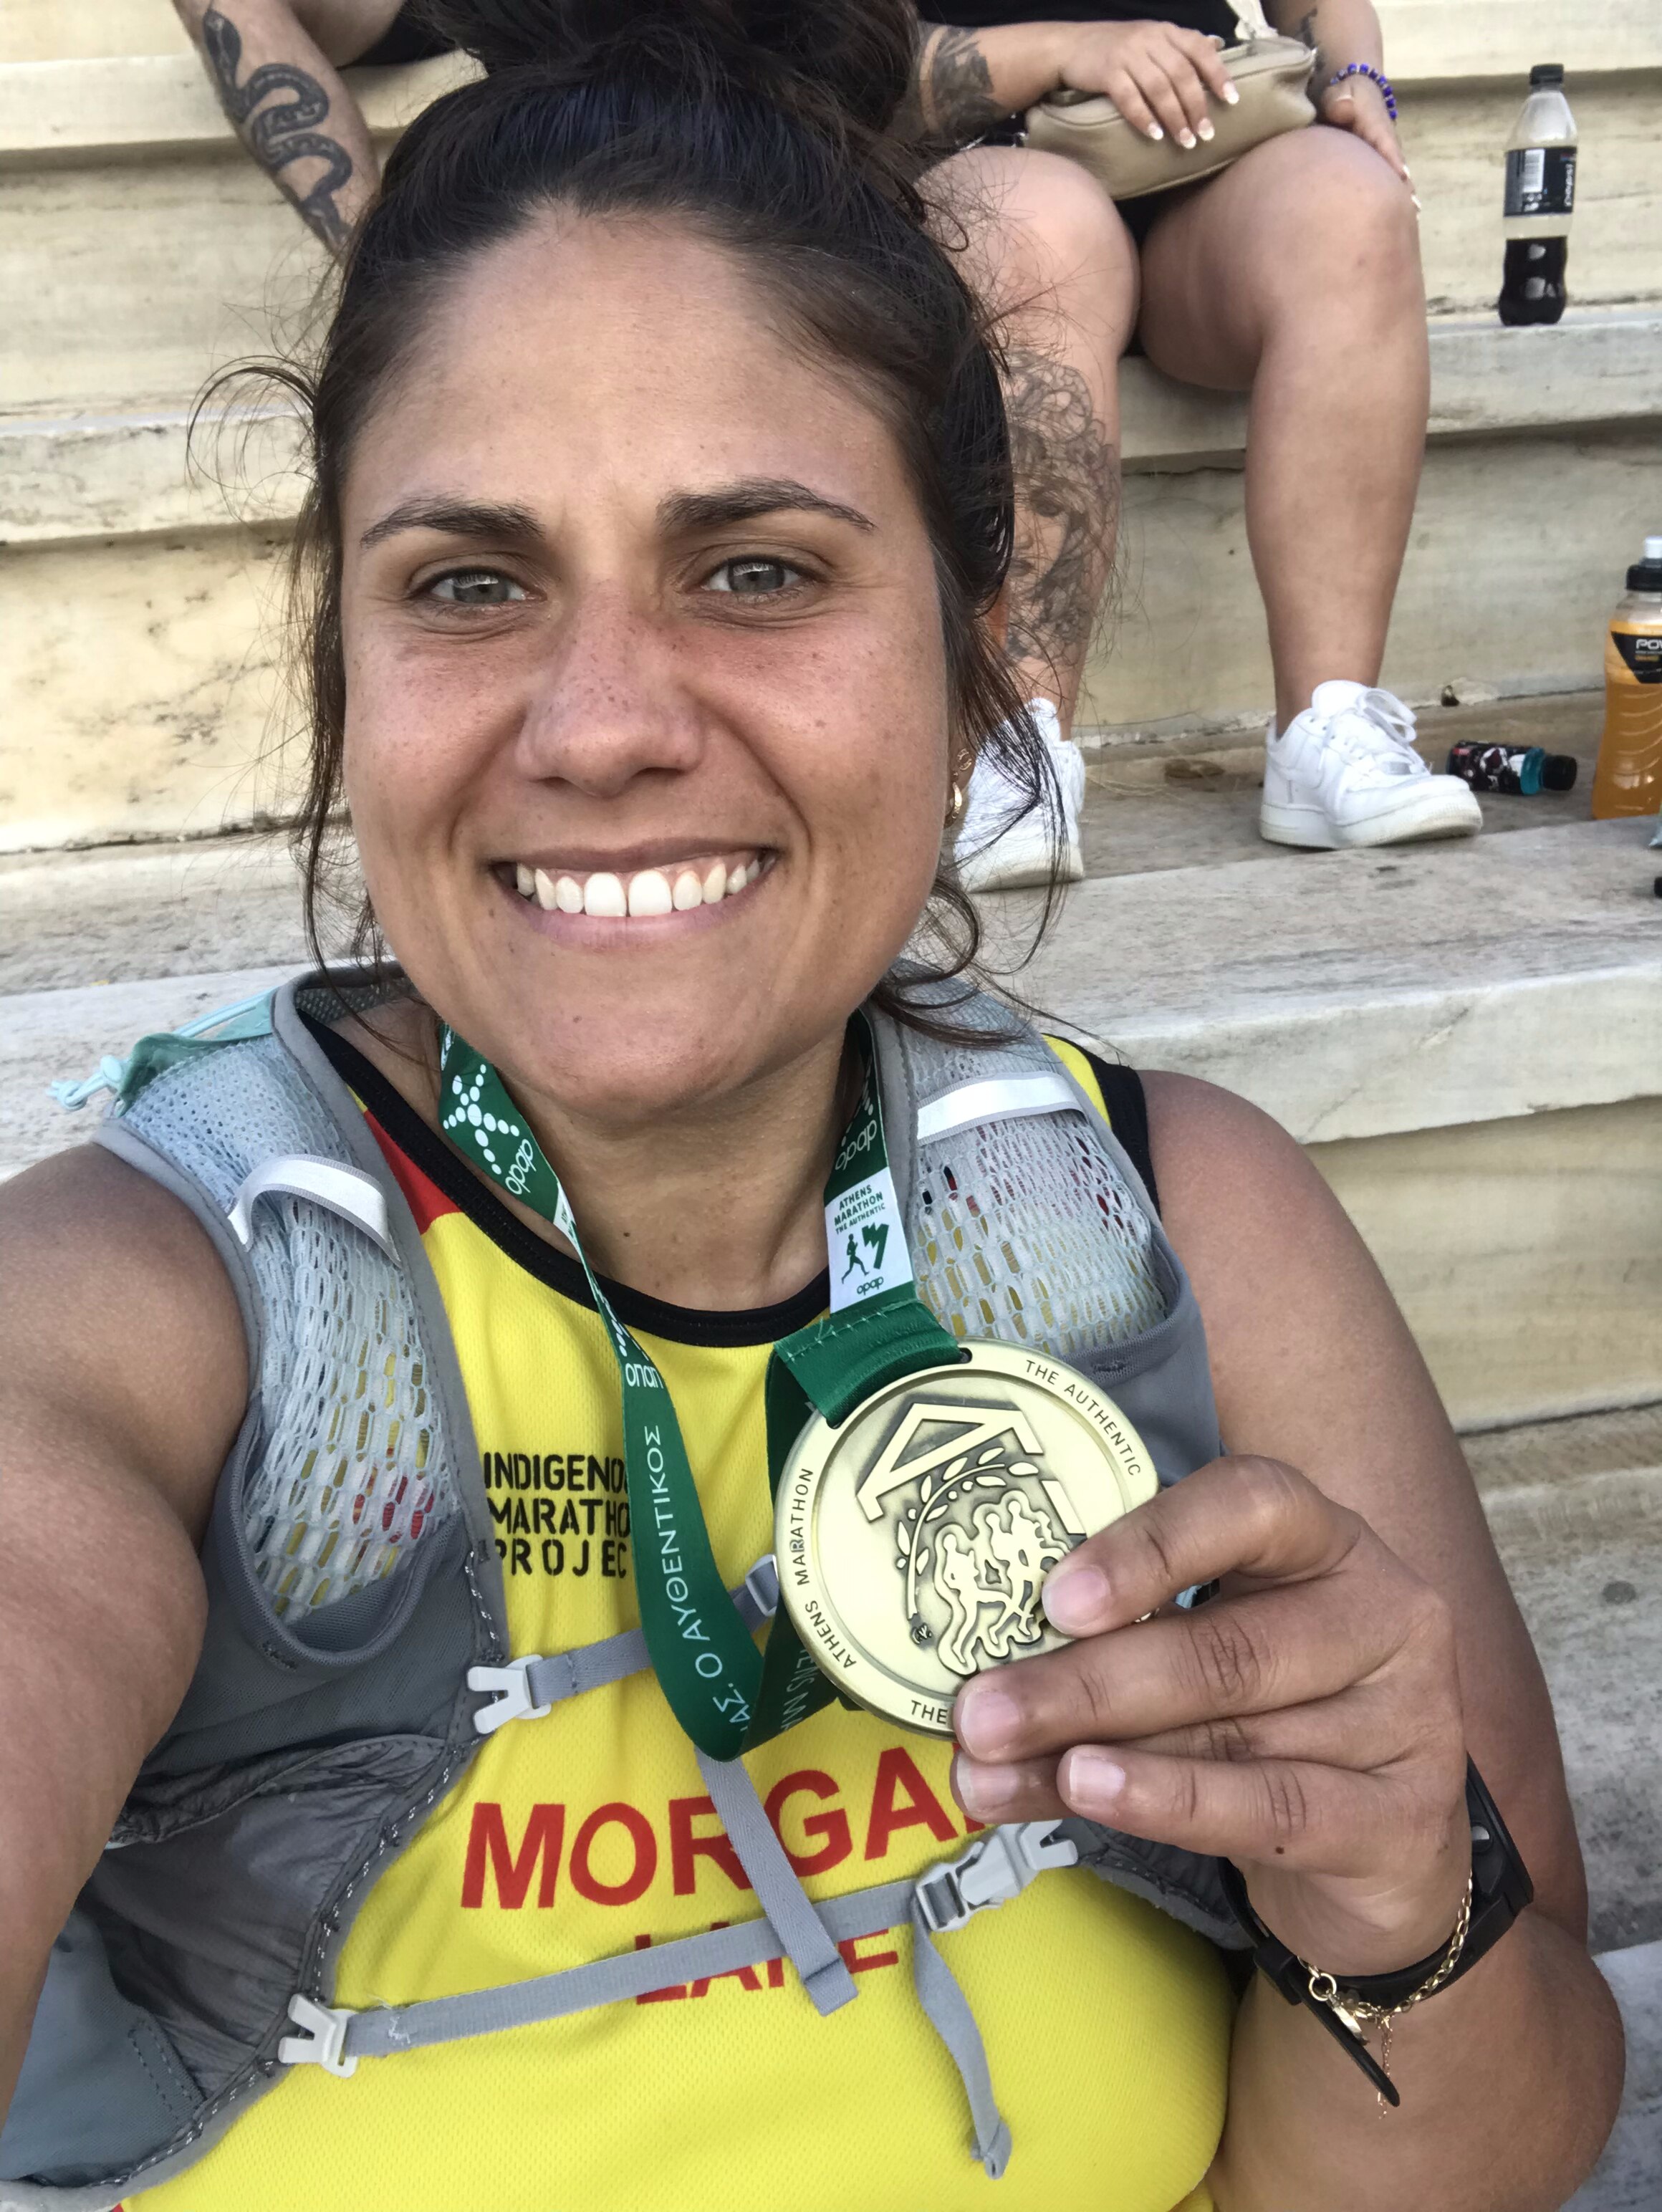 A female marathon runner holds up her medal